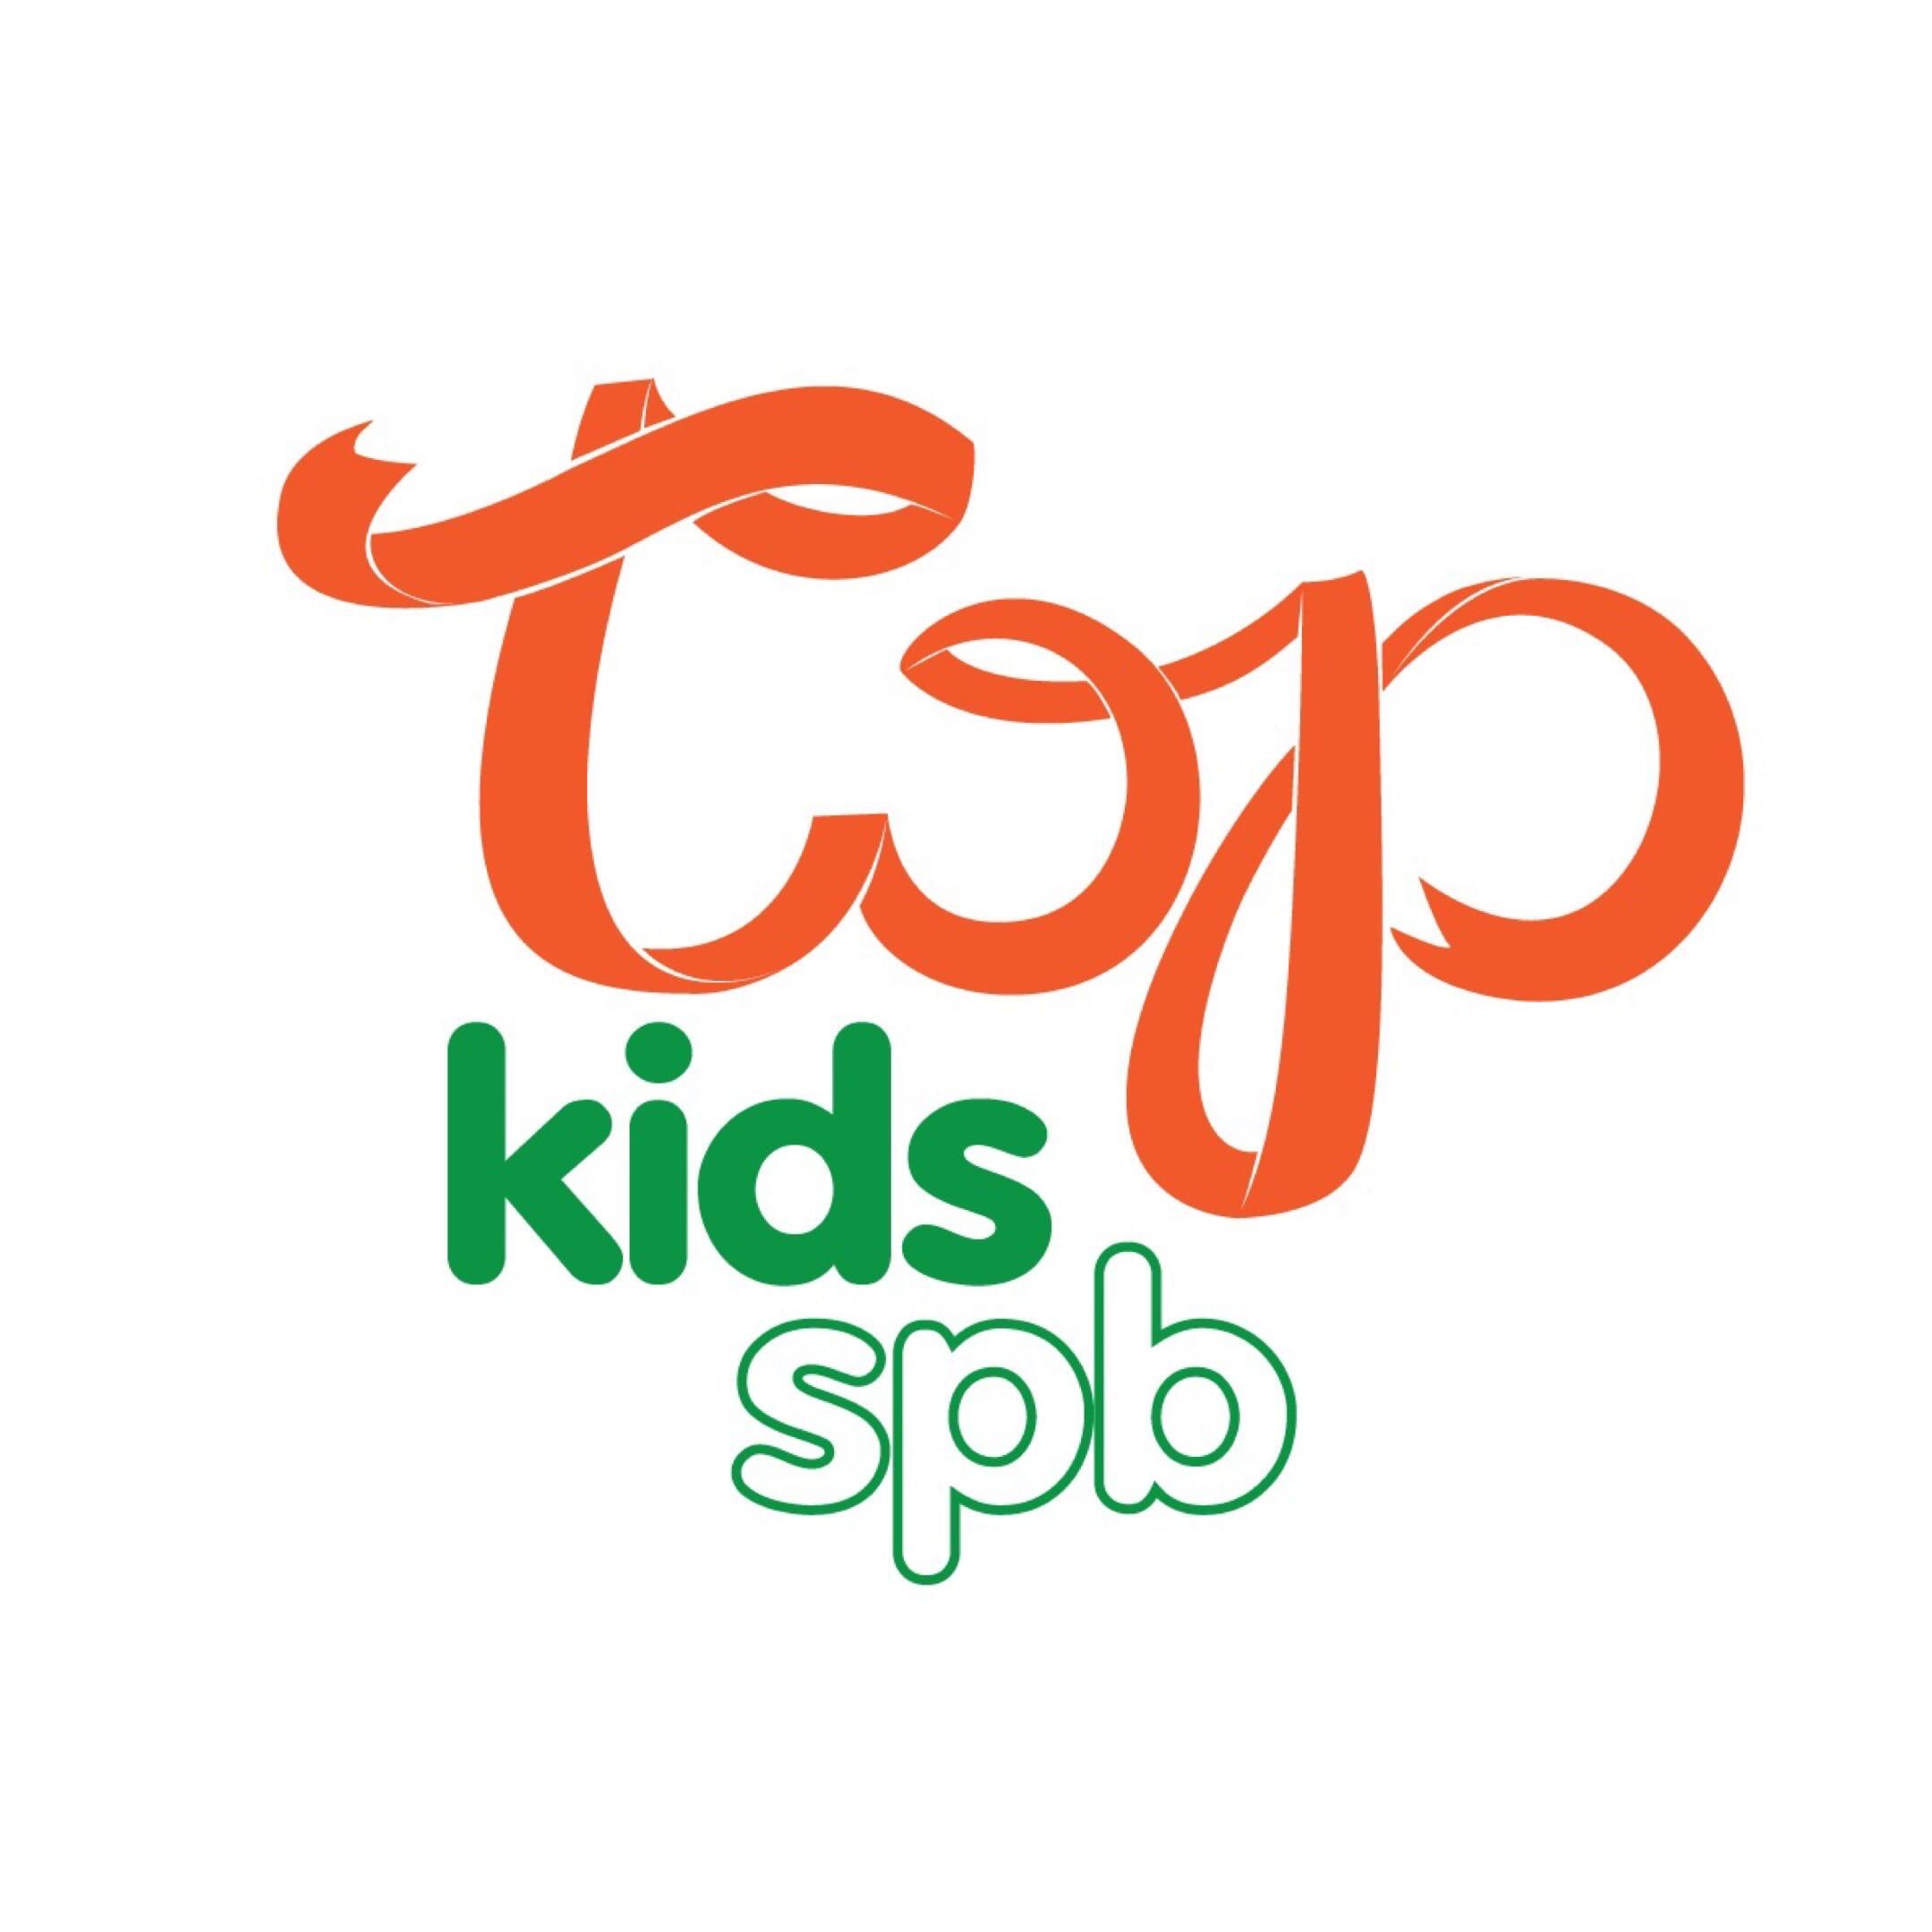 Родительский портал - Модельное агентство для детей Top Kids SPB